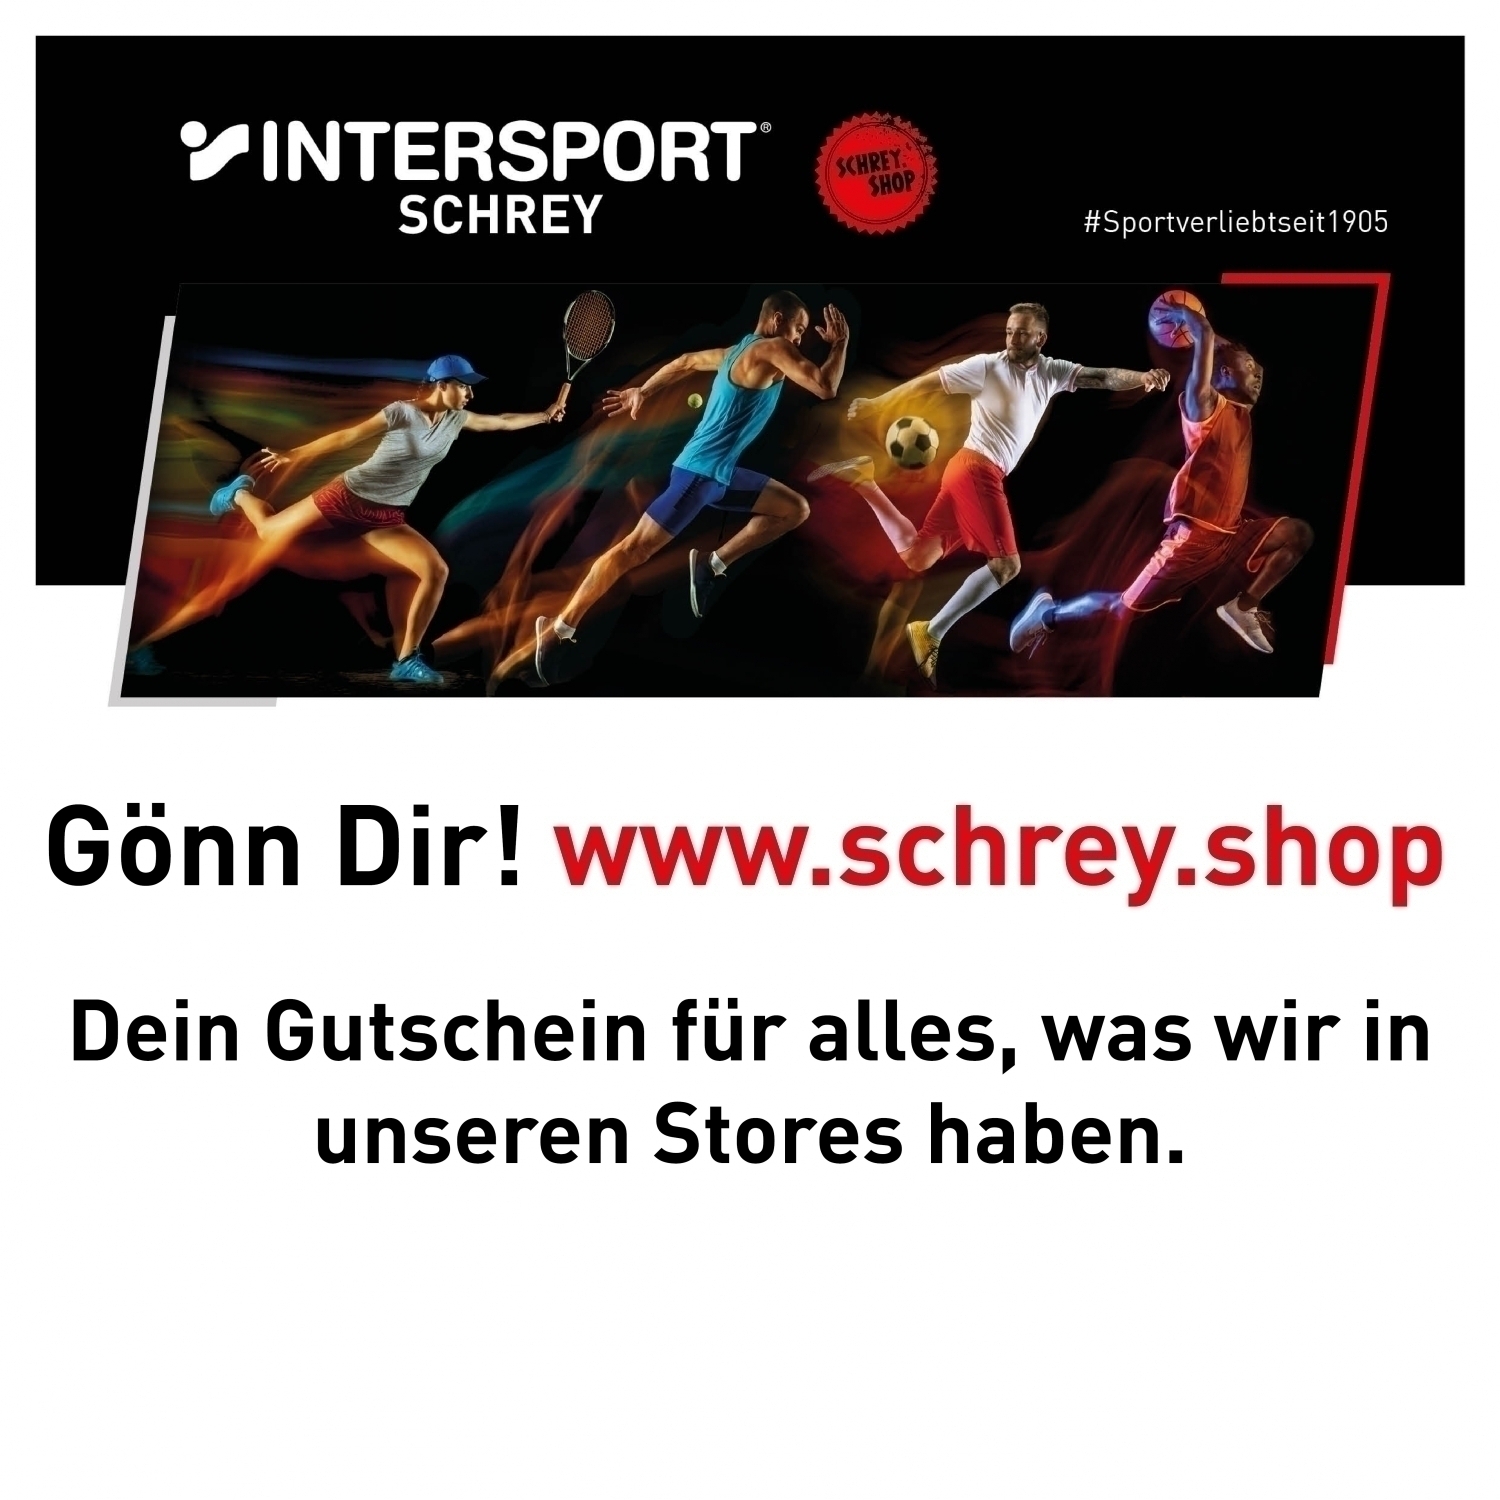 schrey.shop Gutschein